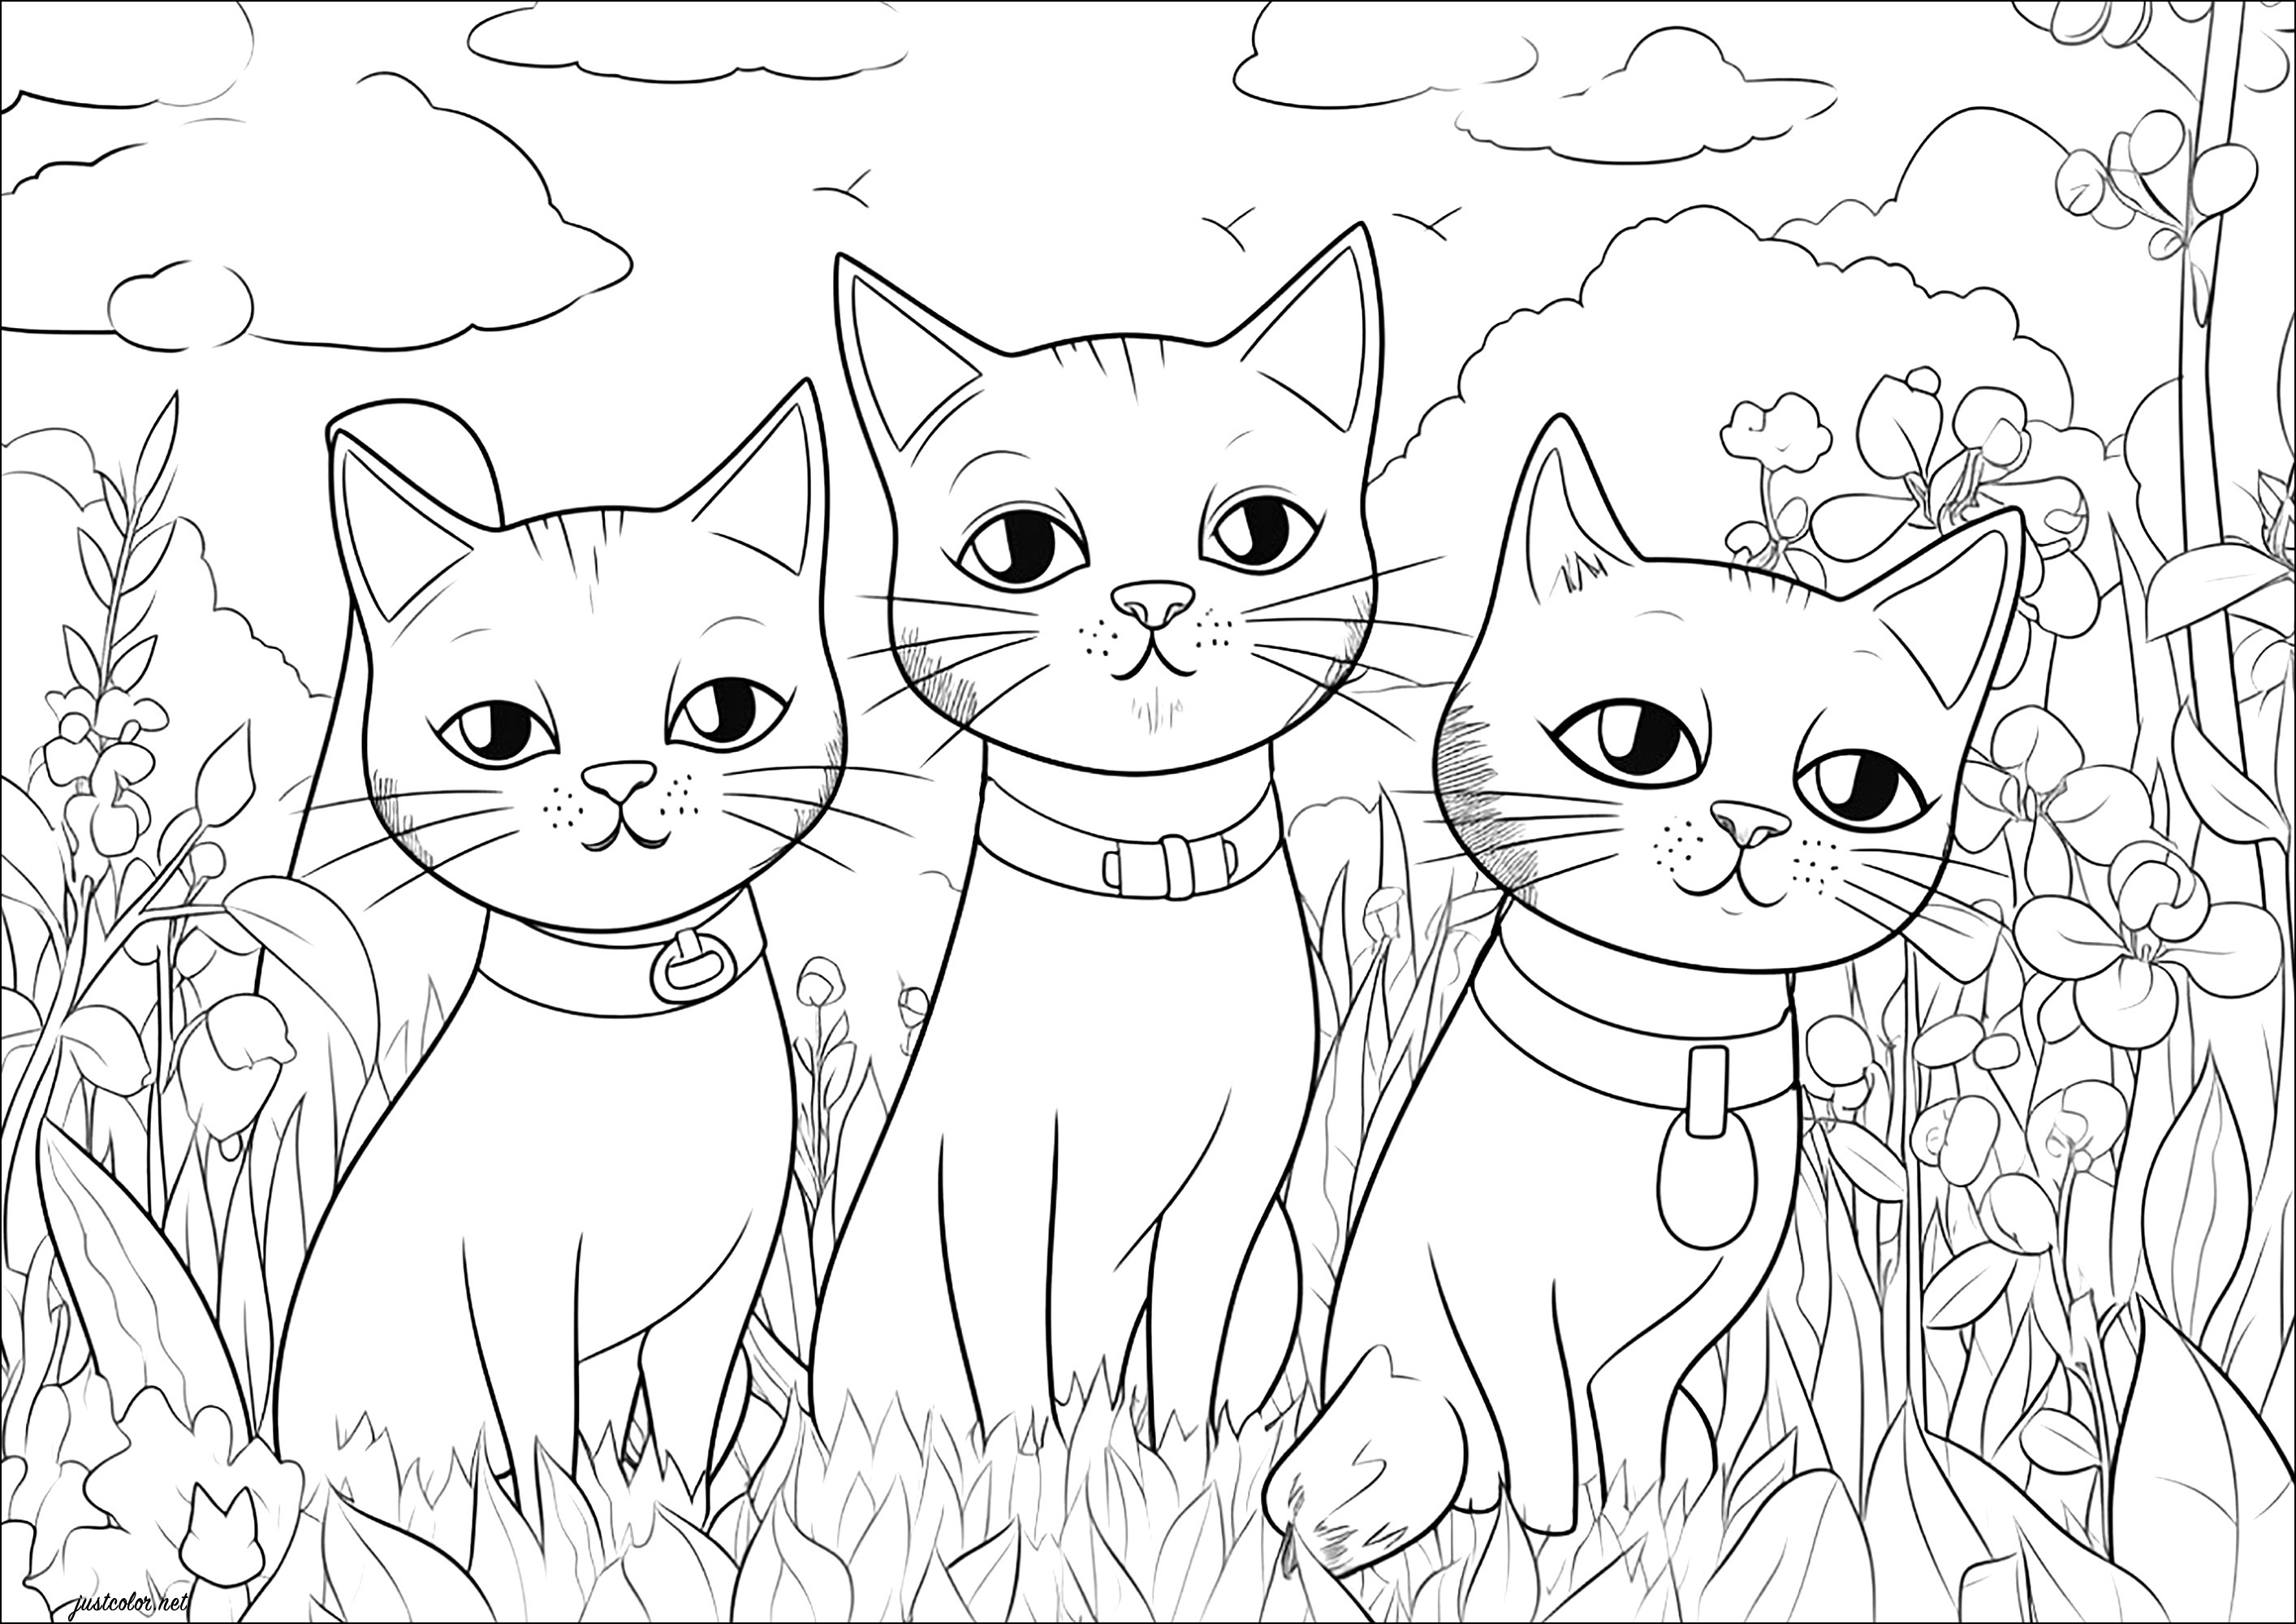 Drei Katzen, die dich anstarren. Drei hübsche Katzen mit einem verächtlichen Blick und jede Menge Pflanzen zum Ausmalen im Hintergrund.